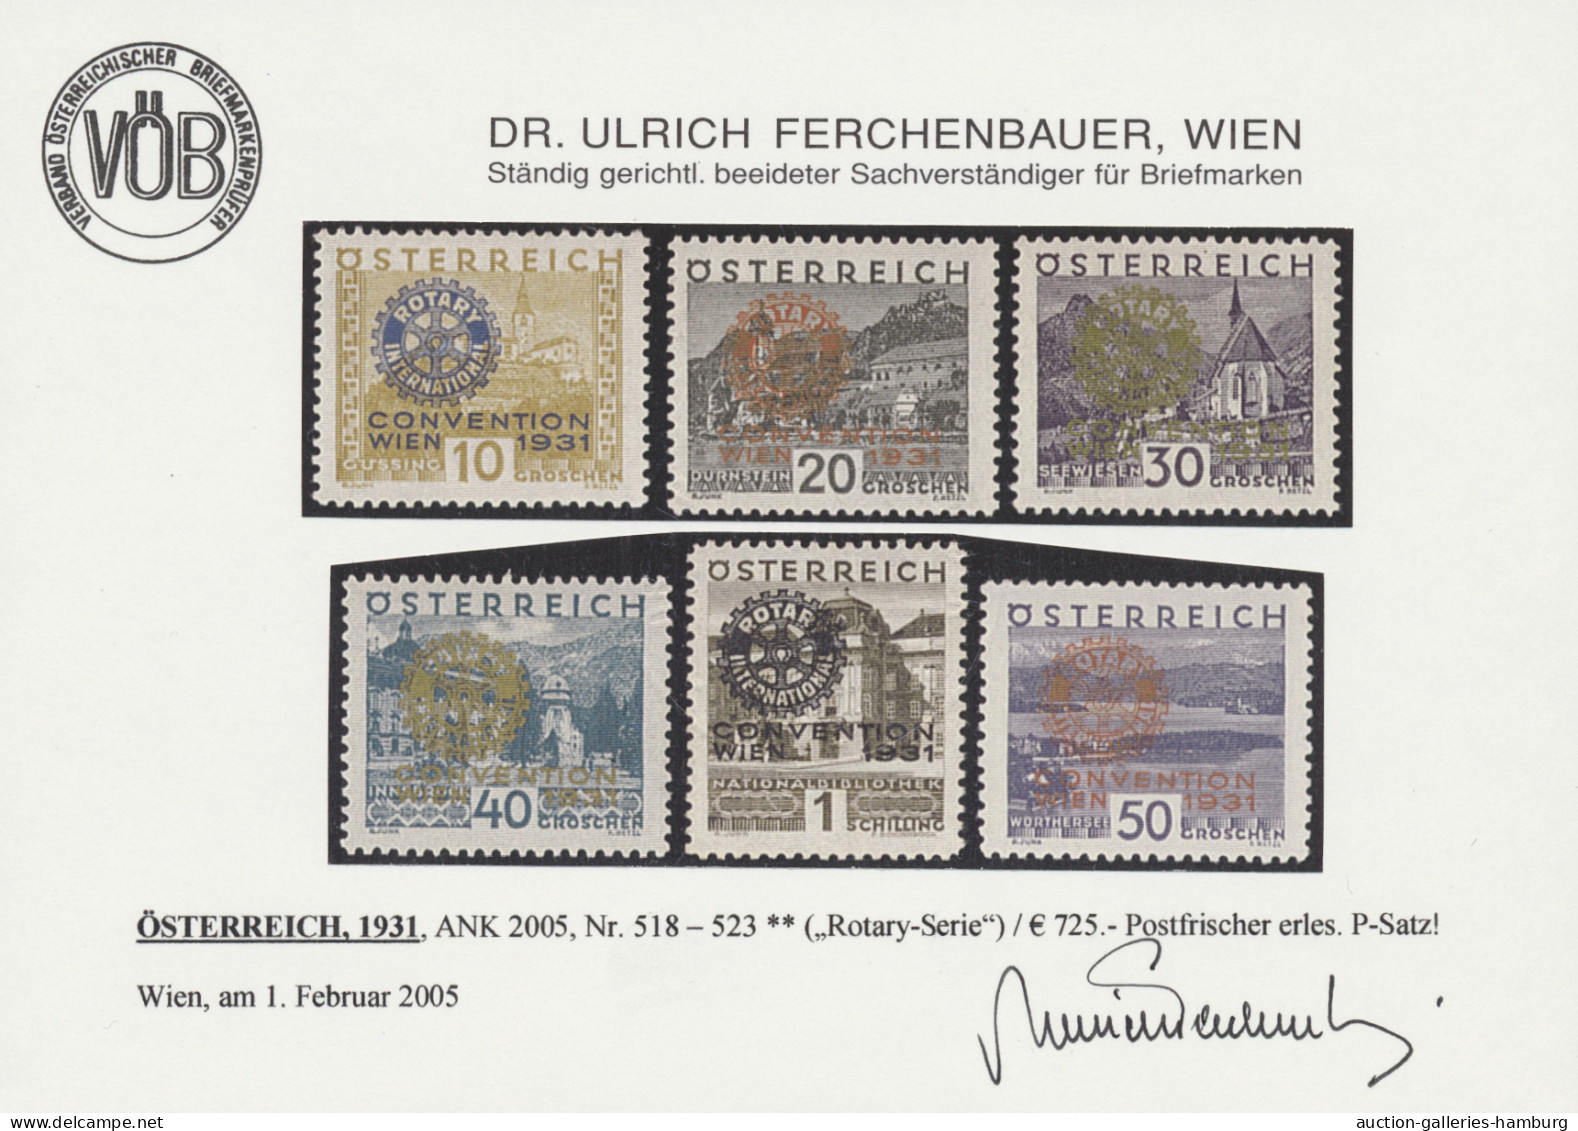 Österreich: 1931, "Rotary-Kongress" 6 Werte komplett in tadelloser postfrischer